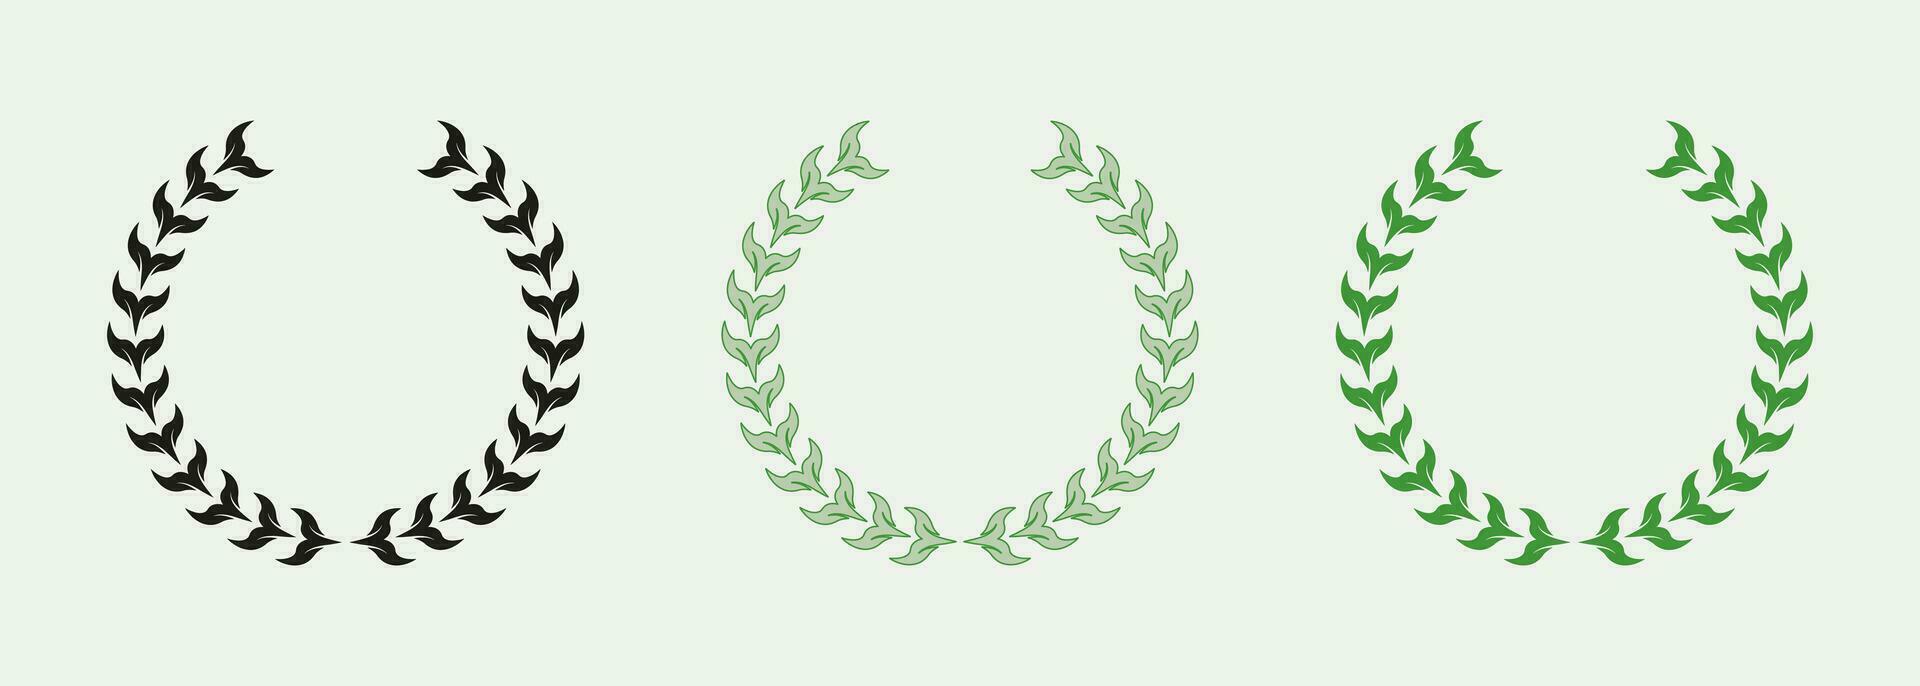 winnaar prijs kleur icoon set. ronde laurier lauwerkrans, chaplet pictogram. cirkel Grieks olijf- boom tak, groen blad symbool verzameling. foliate wijnoogst zege embleem. geïsoleerd vector illustratie.